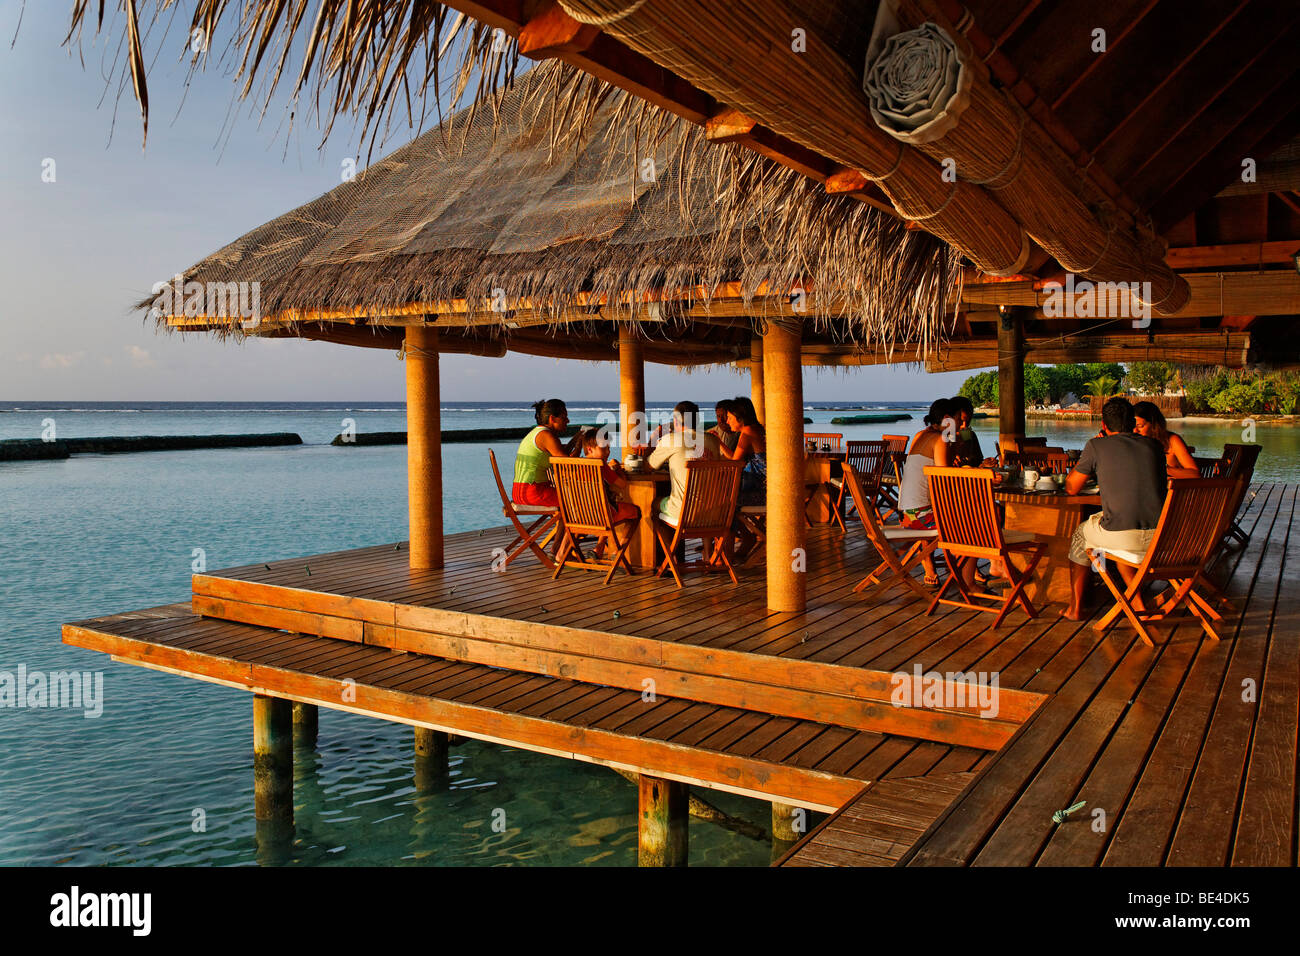 La gente en el desayuno en el restaurante al aire libre, con techo de hojas de palma, restaurante, laguna, mar, Maldivas, Rihiveli Island, South Male en Foto de stock